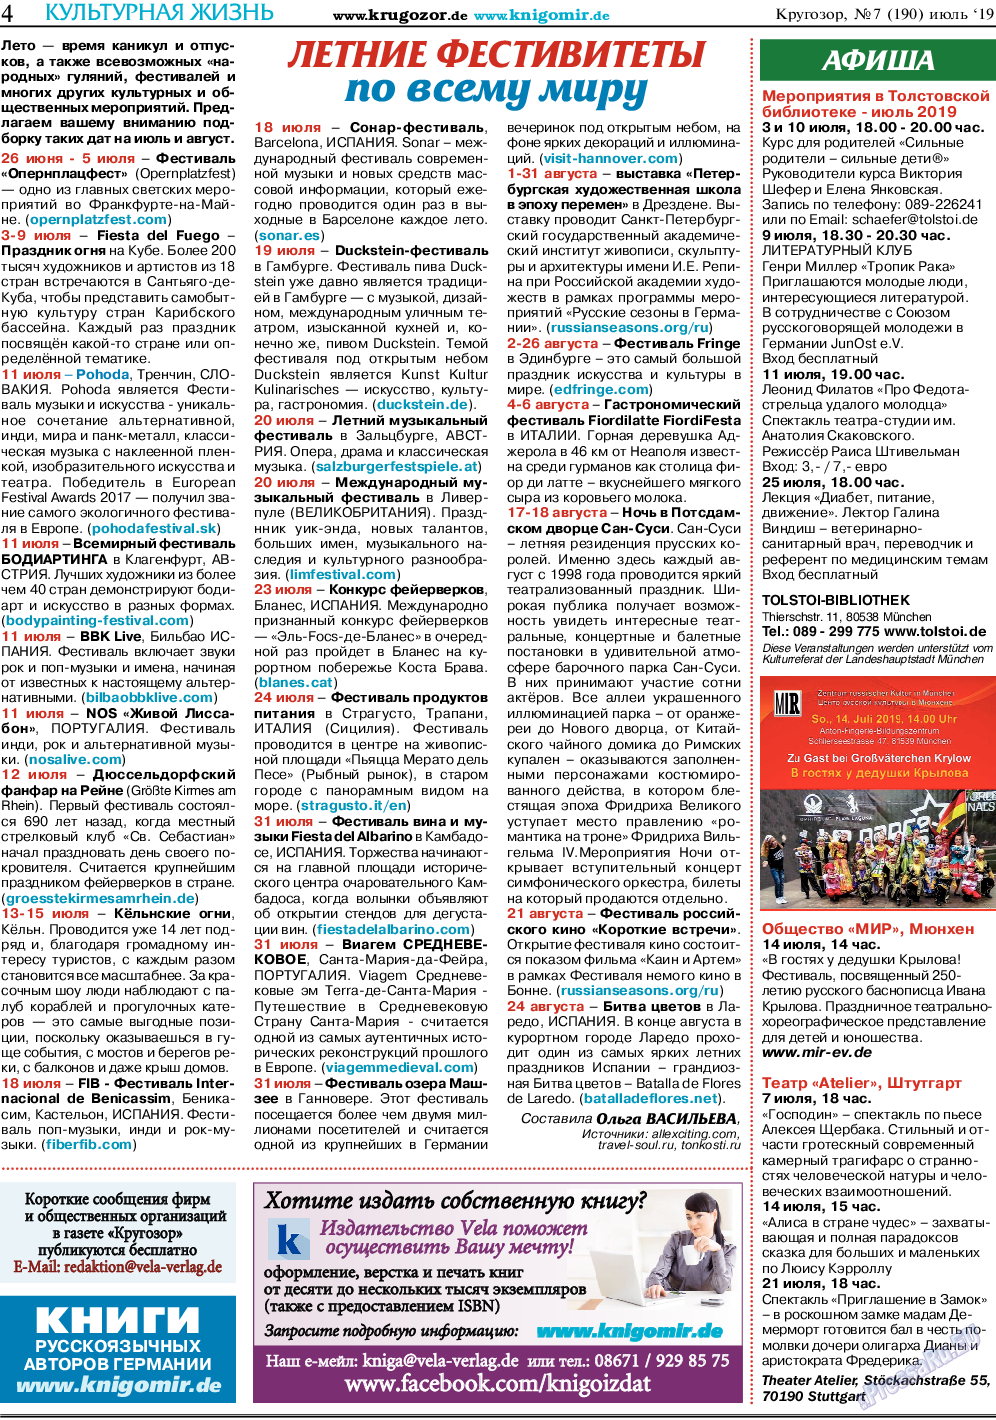 Кругозор, газета. 2019 №7 стр.4